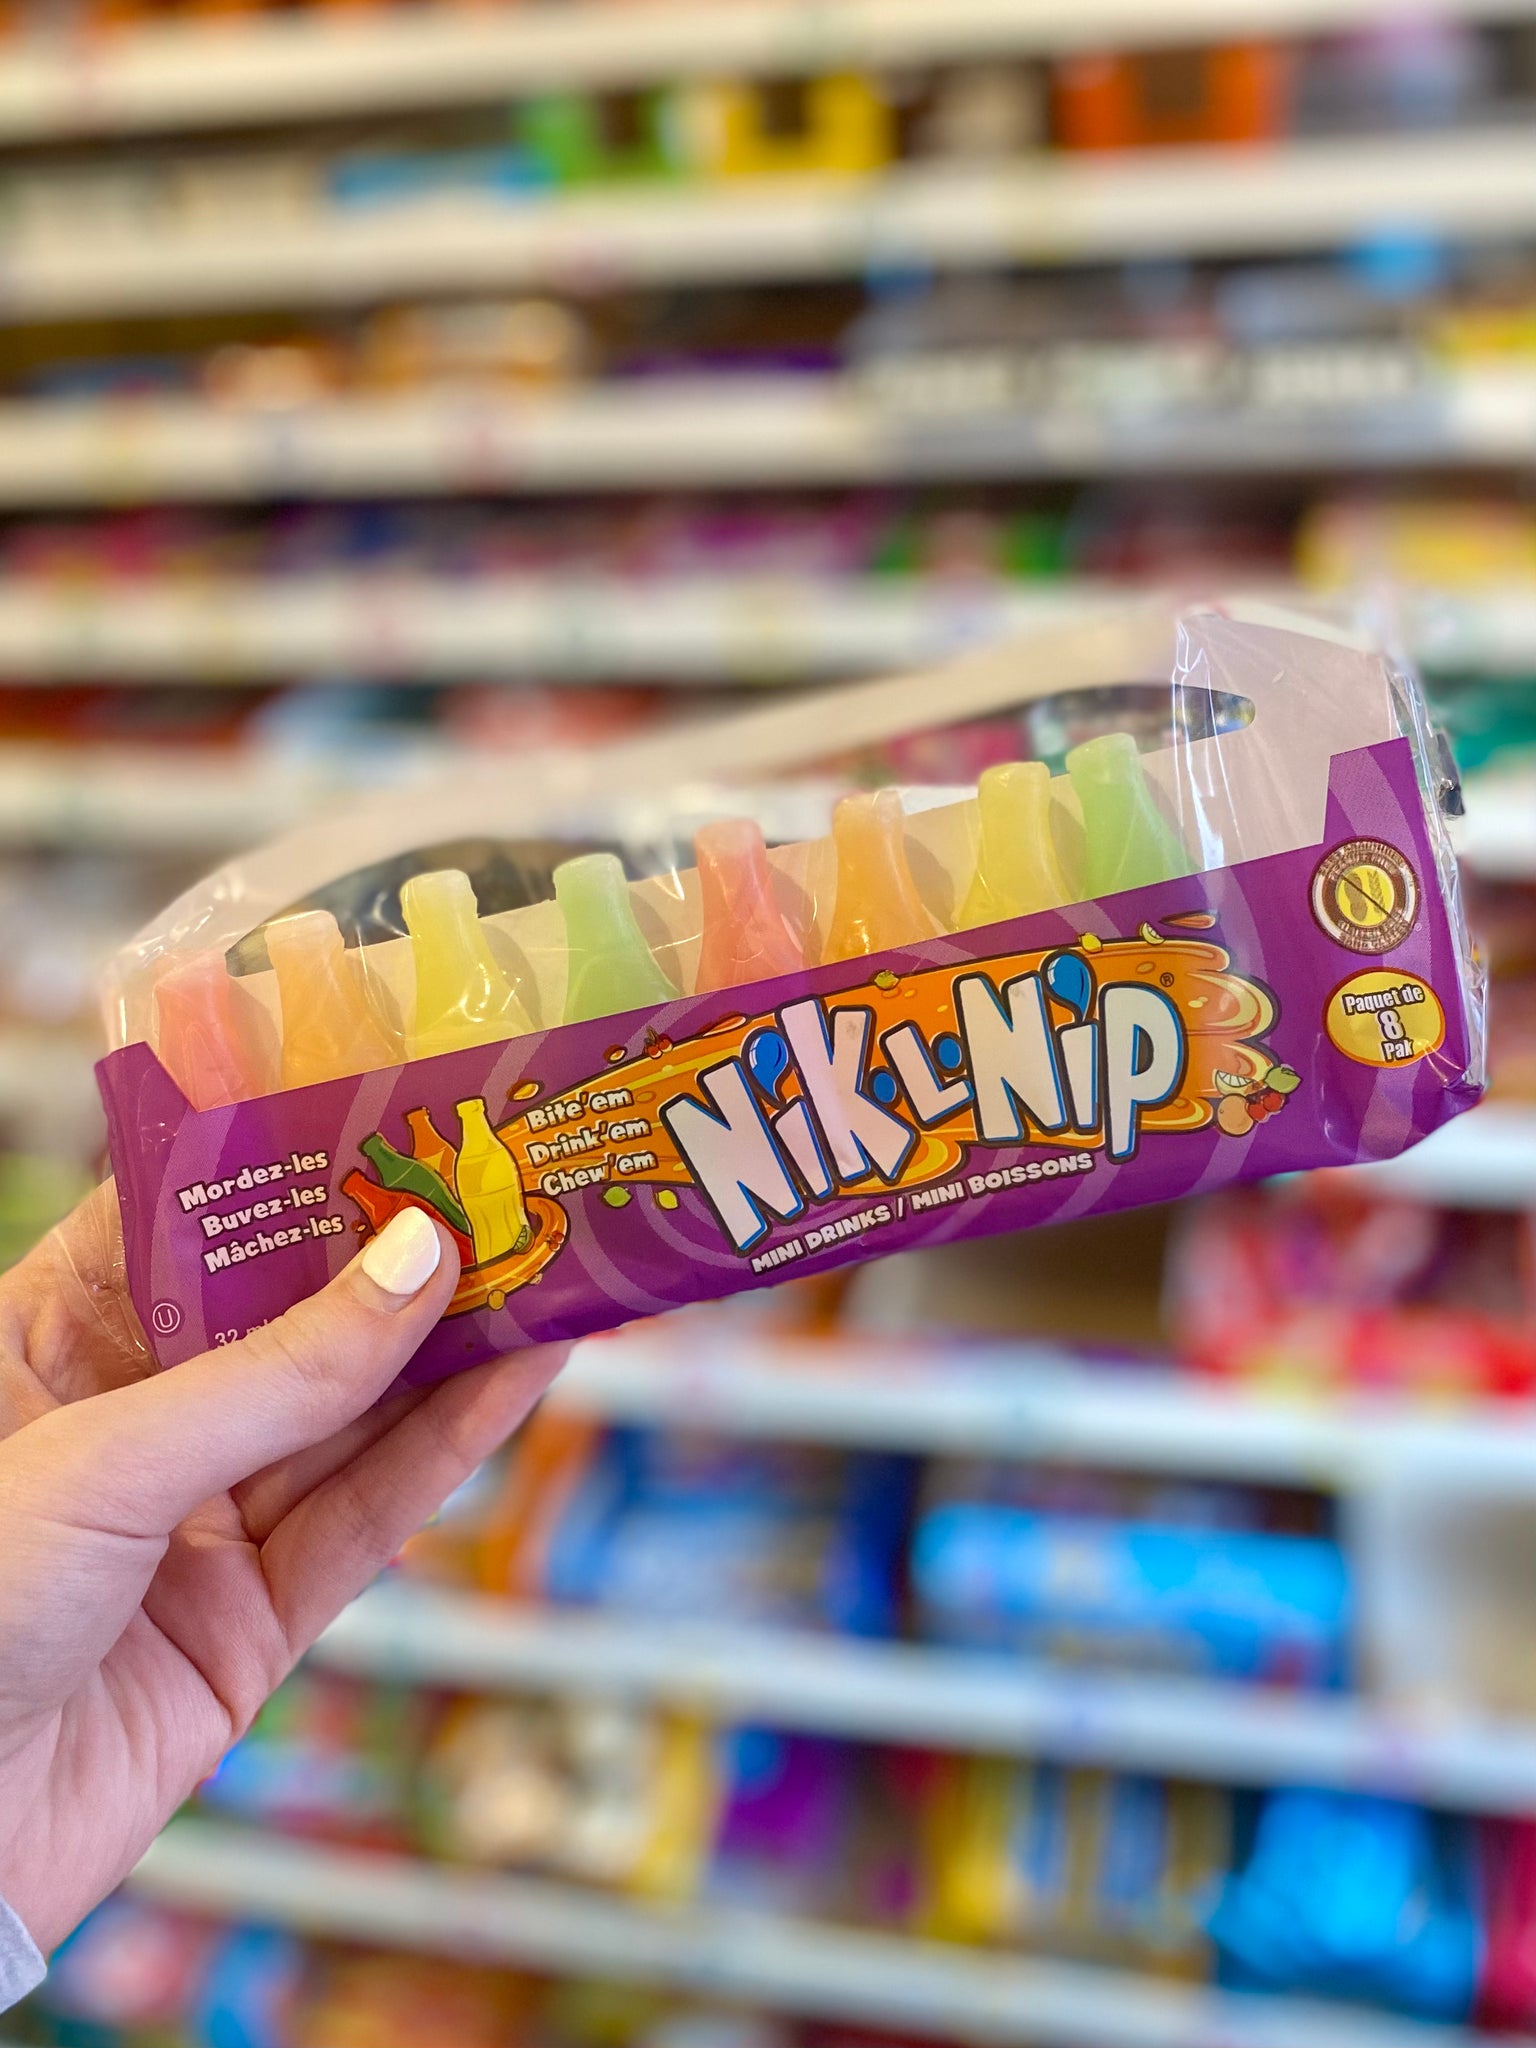 Nik-L-Nip - 8 pack